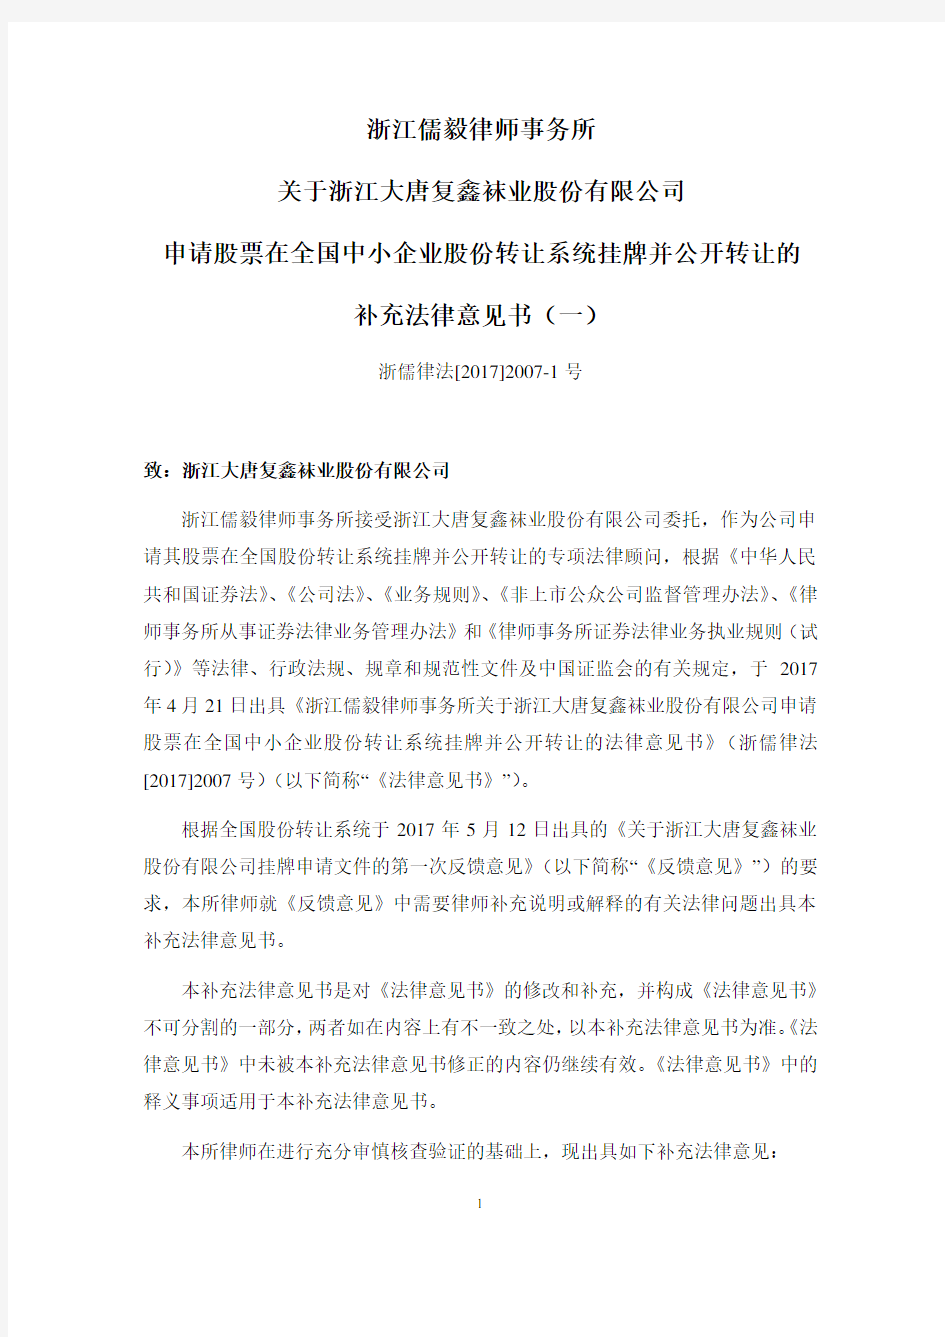 儒毅律师事务所补充法律意见书-全国中小企业股份转让系统